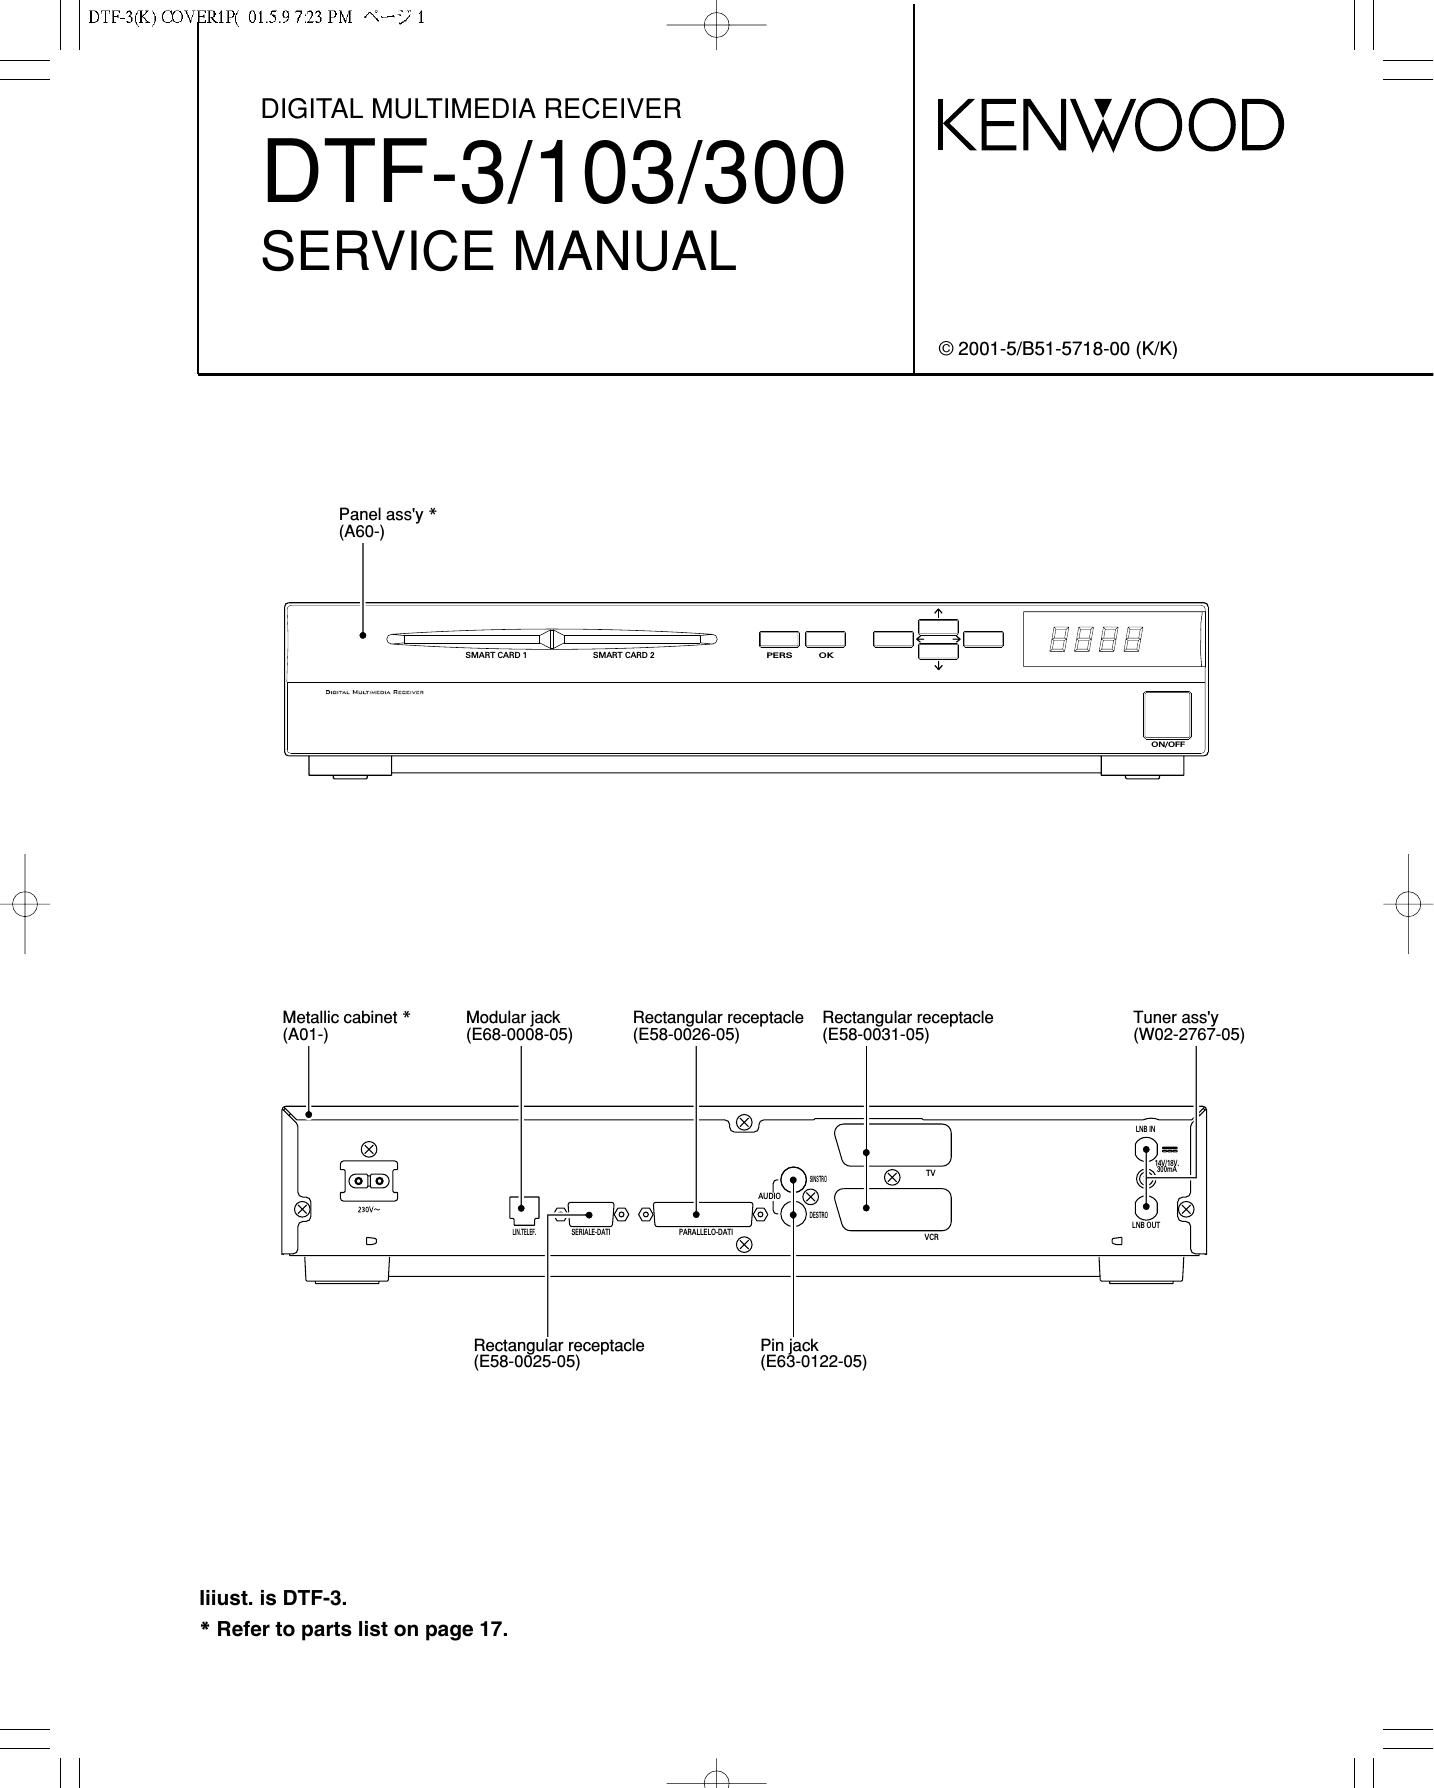 Kenwood DTF 300 Service Manual